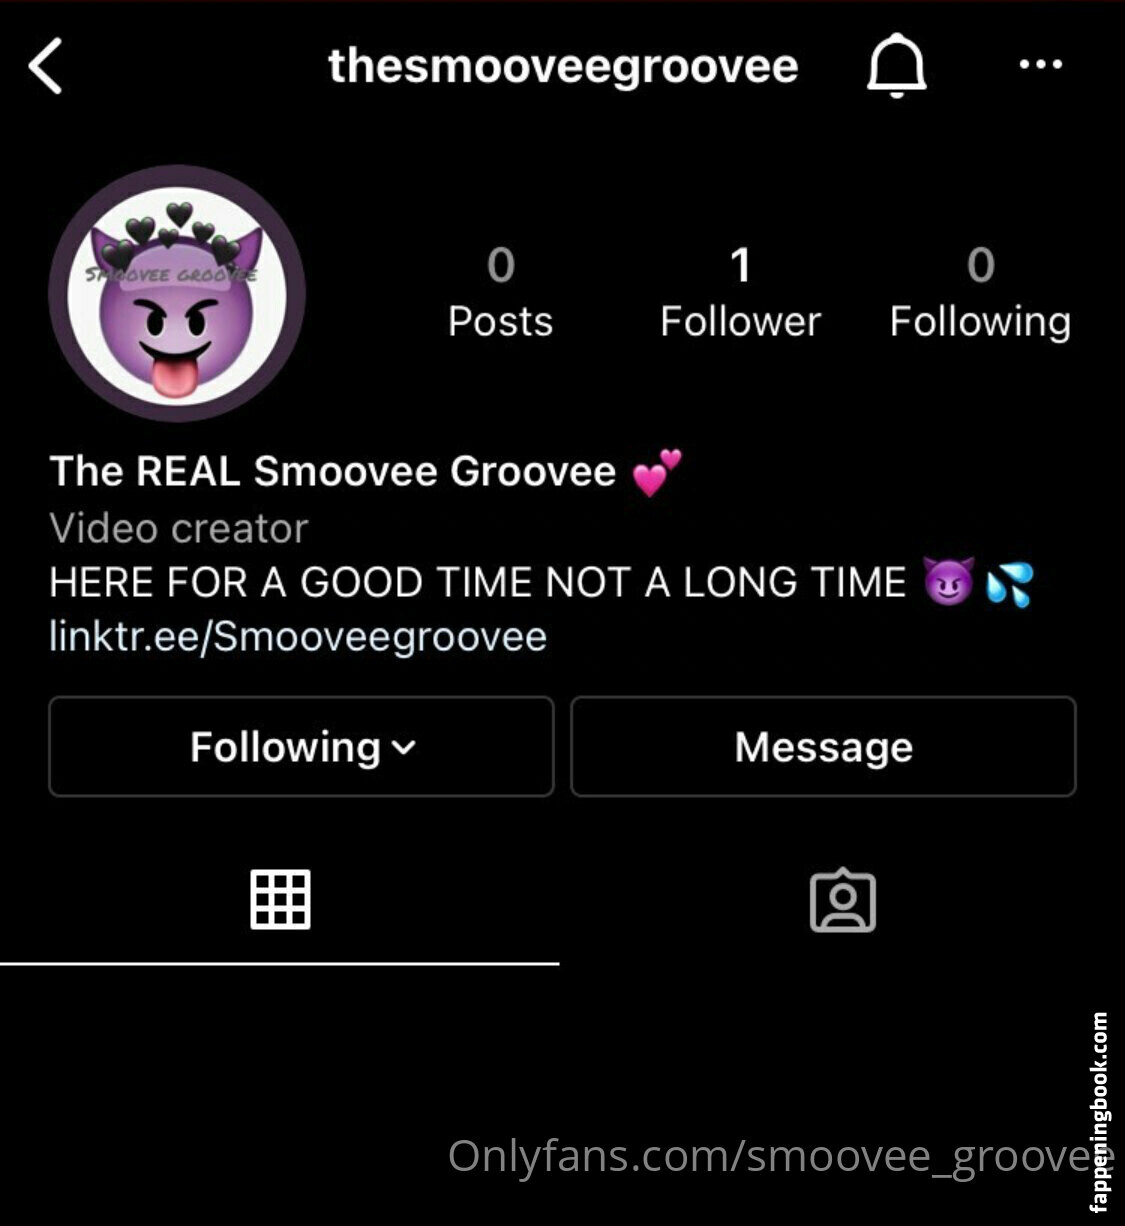 Smoovee_groovee